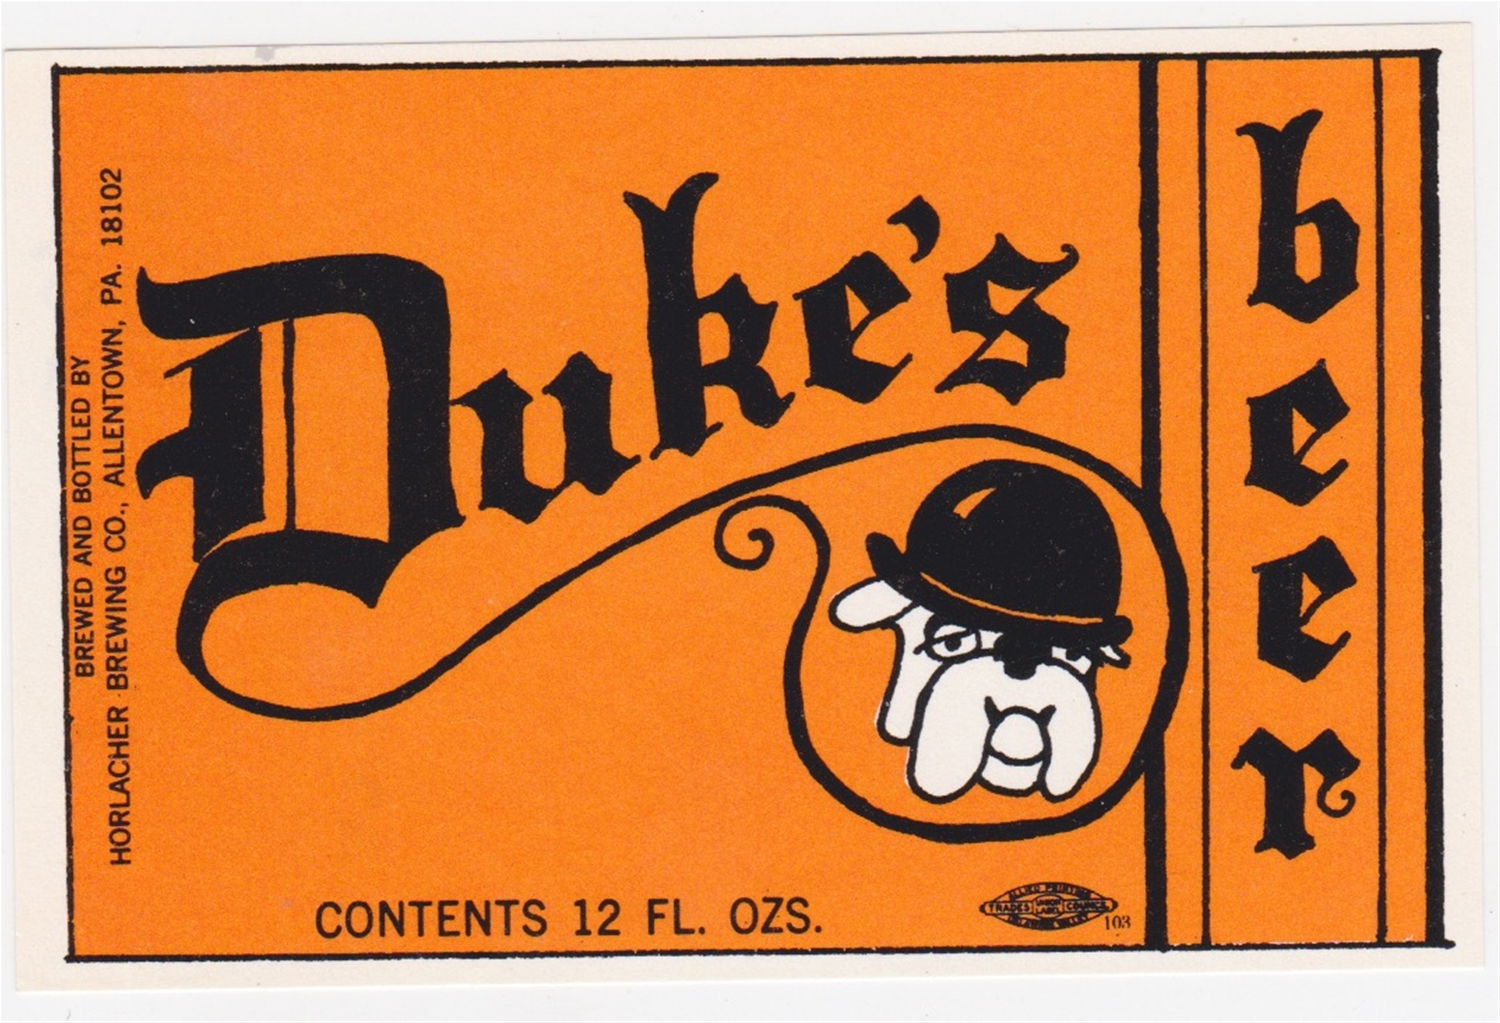 Duke's Beer Label